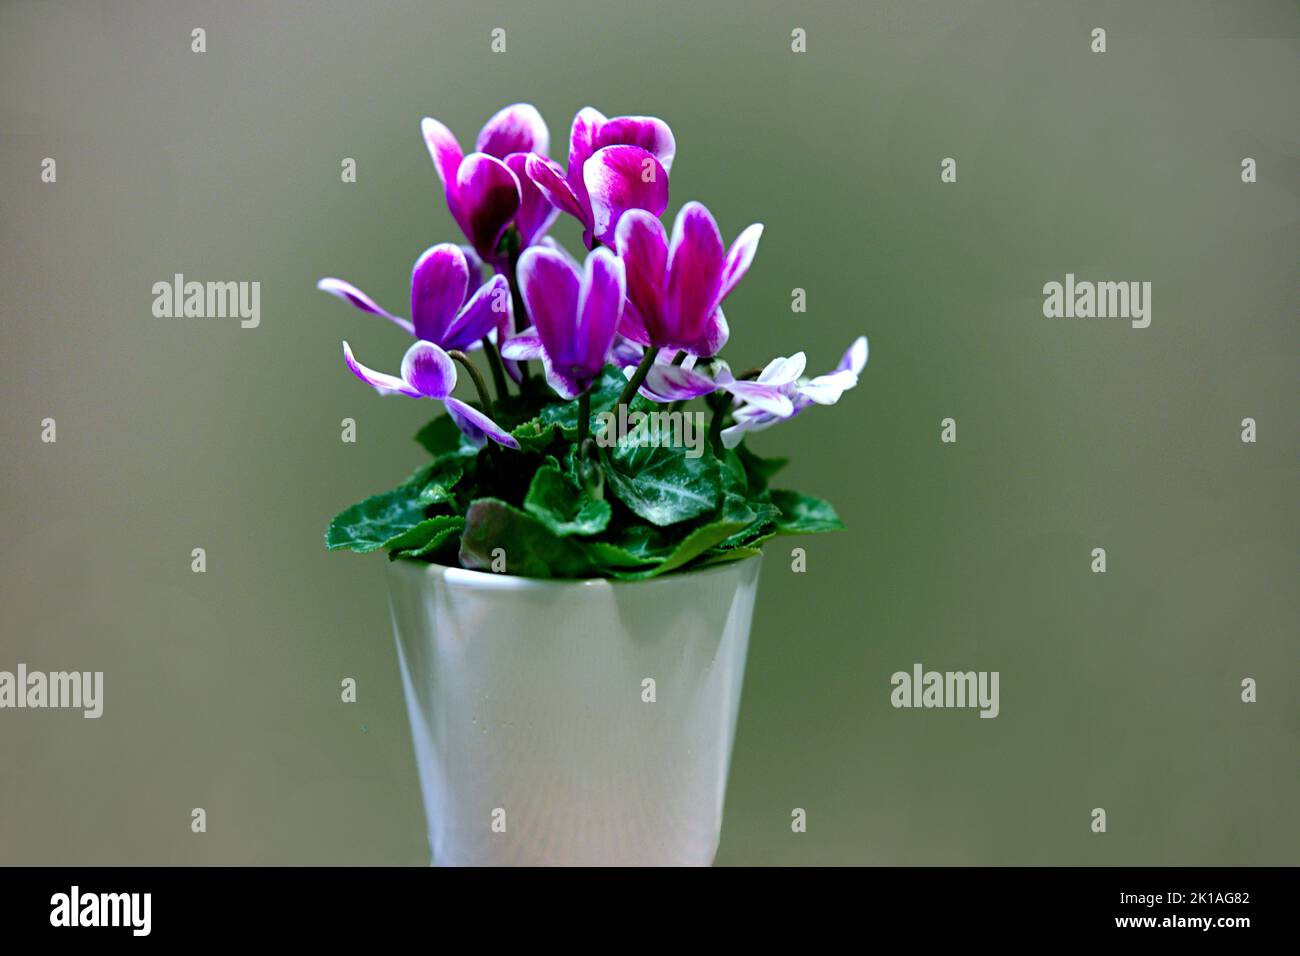 Alpenveilchen einzelner Blumenstock mit verschiedenen Farbnuacen grün, hellblau, blau, rosa, gosaschwarz, vielett, braun, Foto de stock